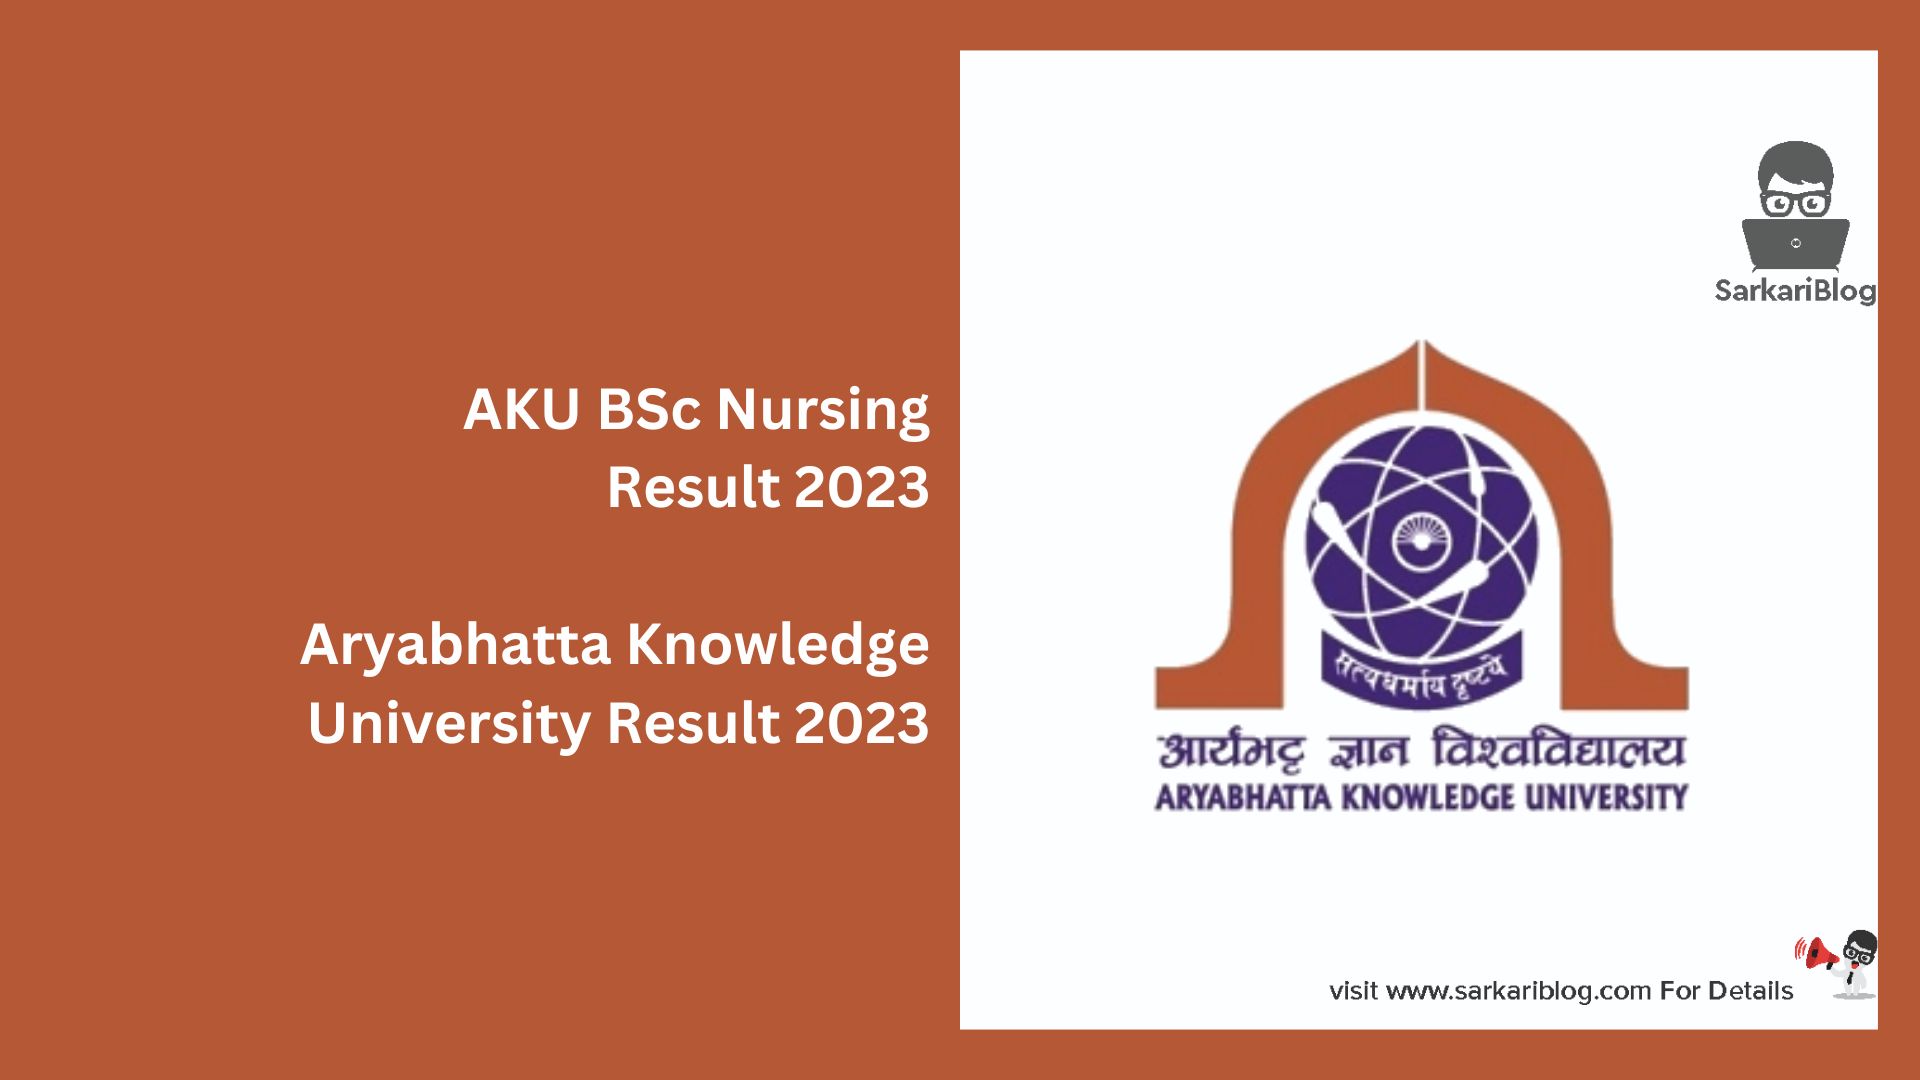 AKU BSc Nursing Result 2023